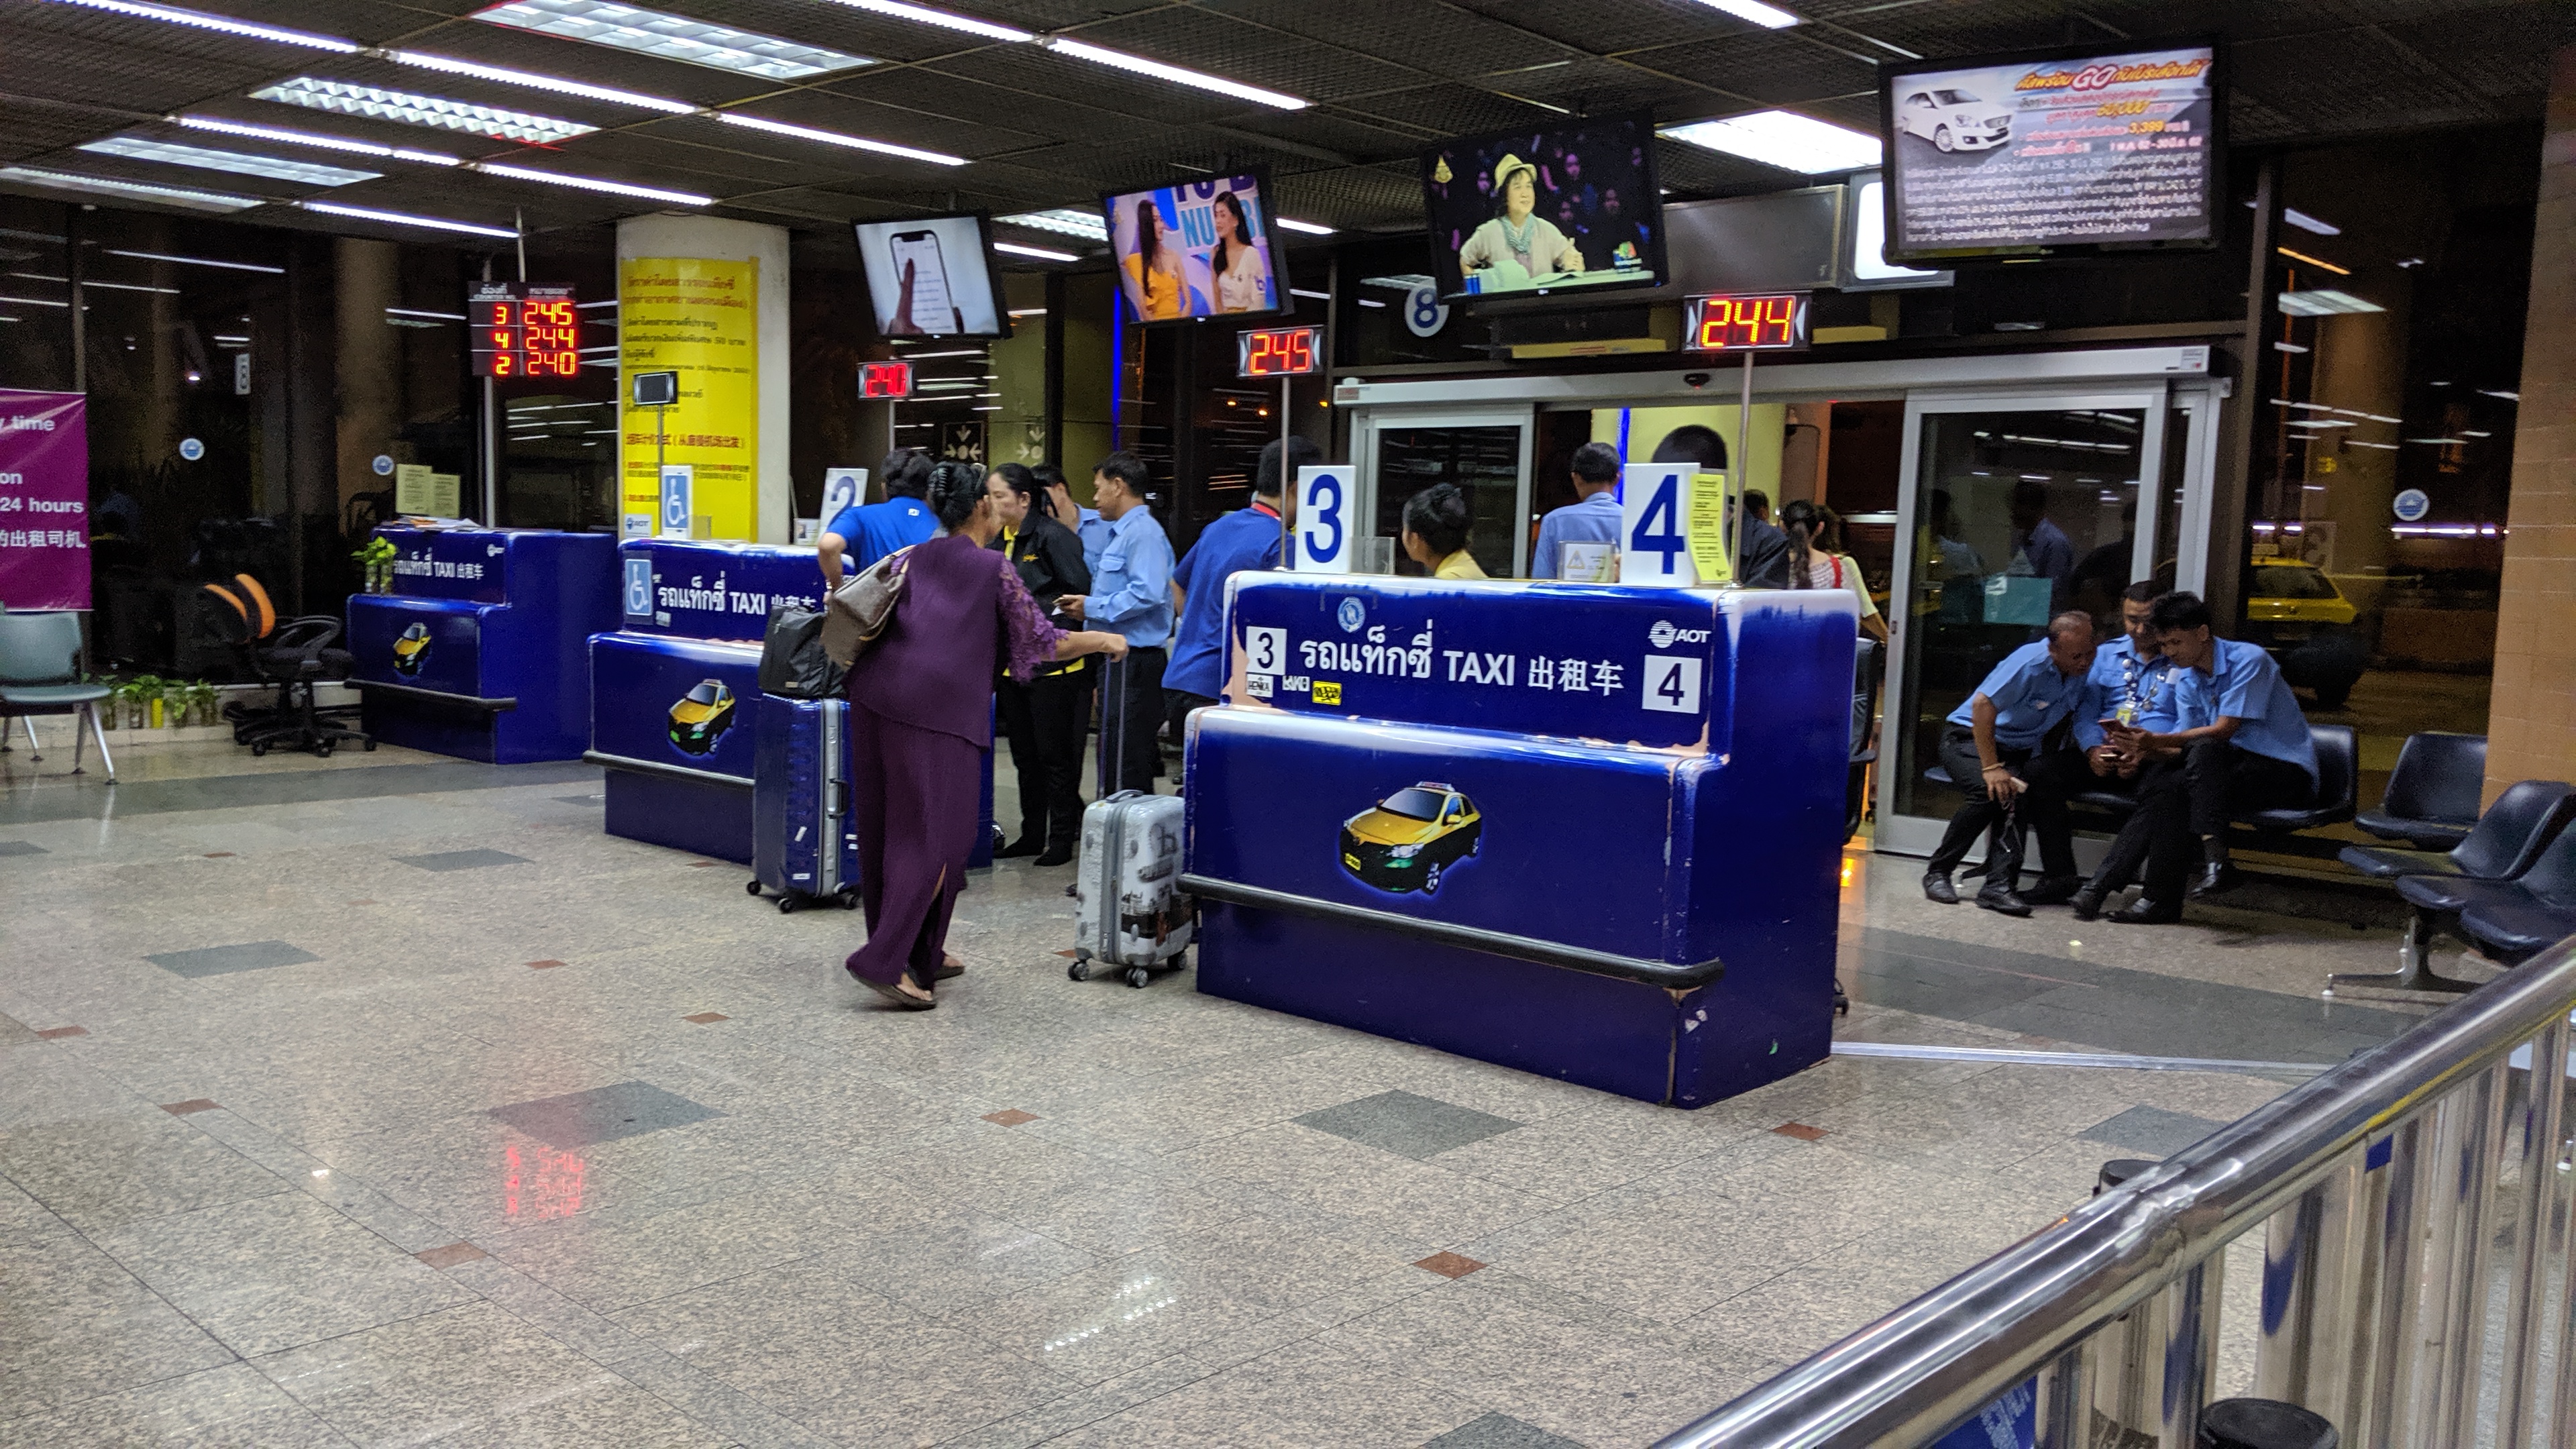 バンコク・ドンムアン空港のおすすめの過ごし方